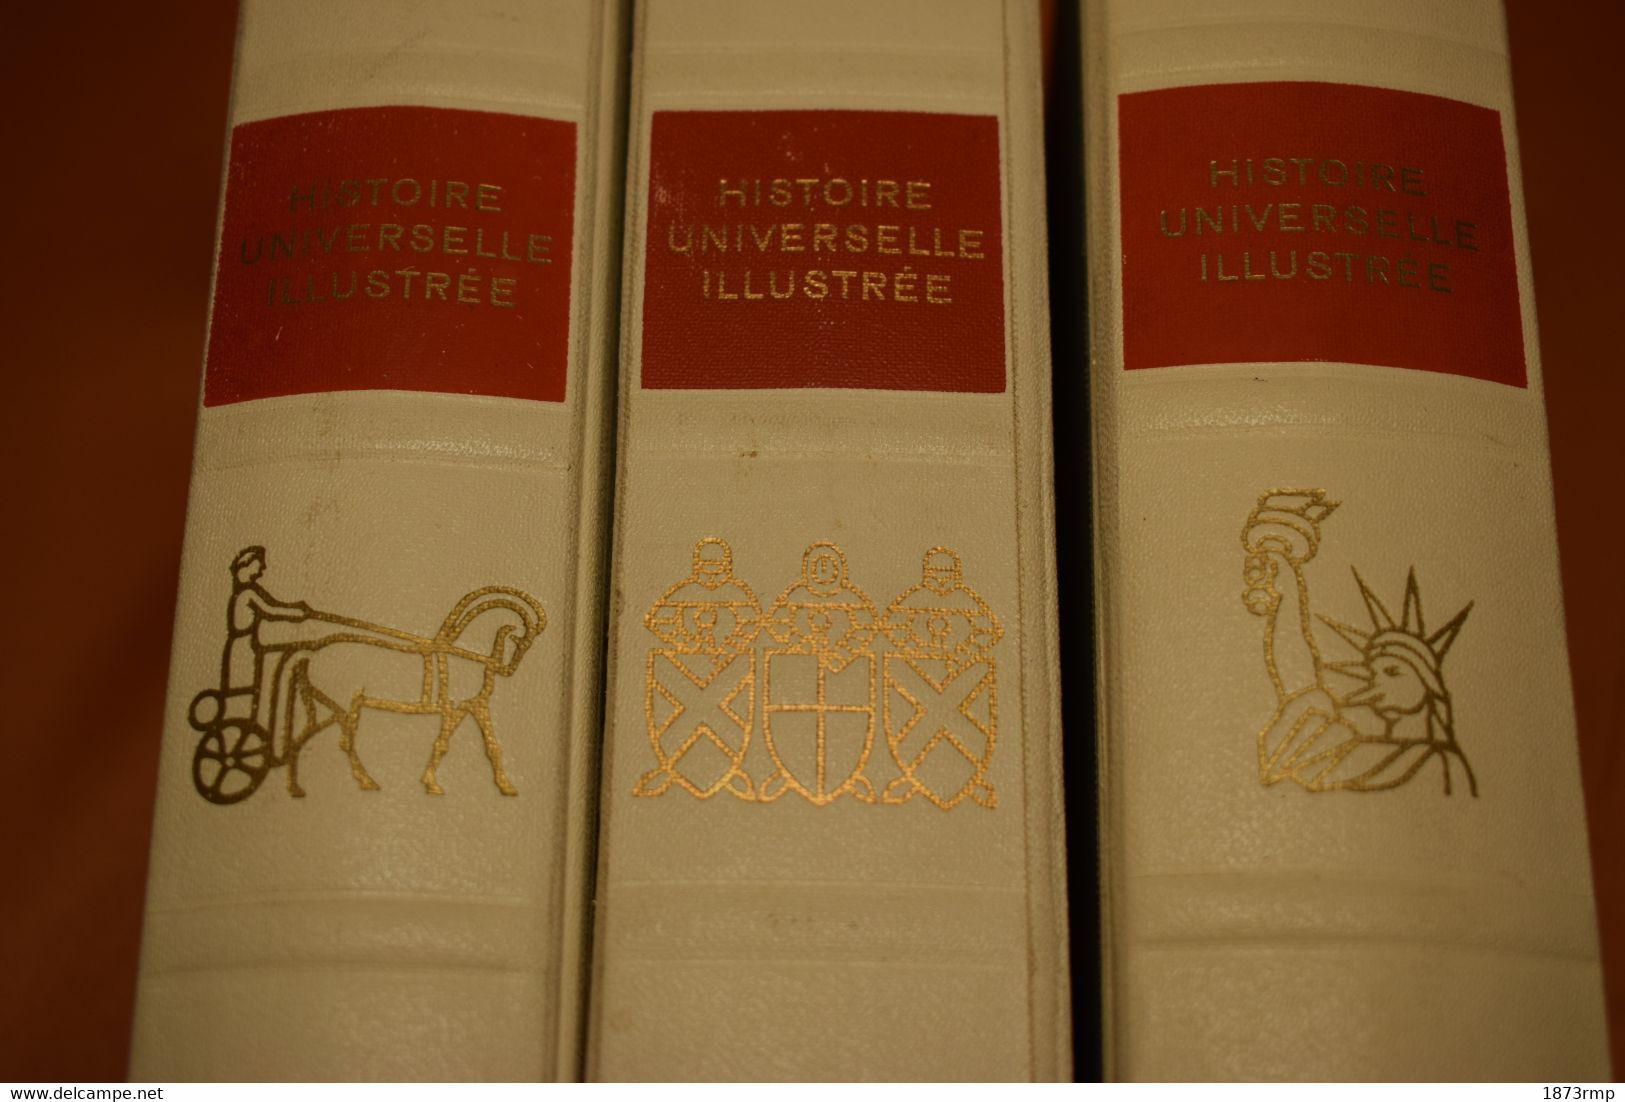 HISTOIRE UNIVERSELLE ILLUSTRÉE TROIS VOLUMES - Encyclopédies